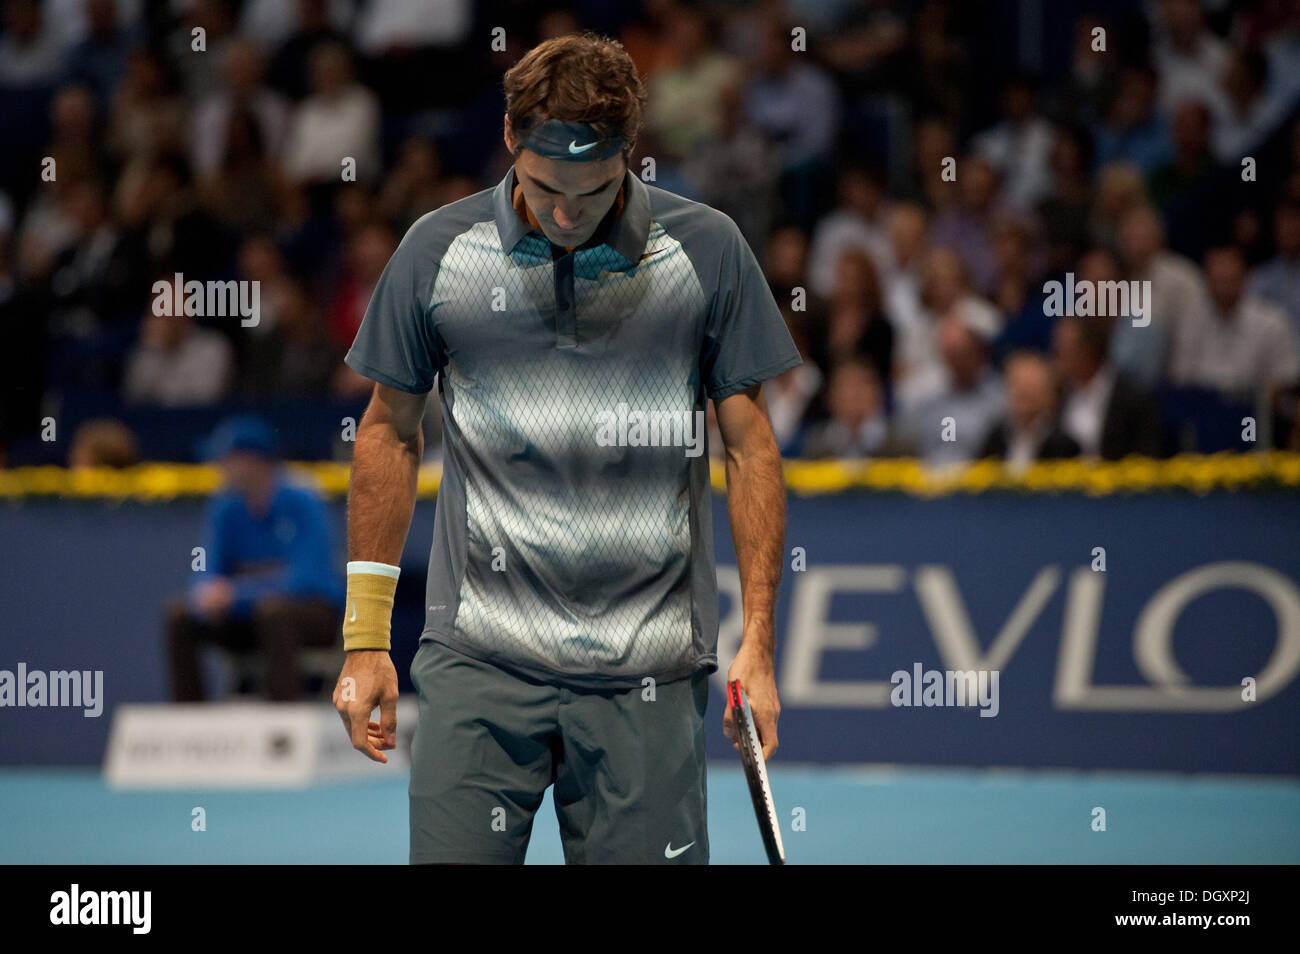 Basel, Svizzera. 27 ott 2013. Roger Federer (SUI) deluso durante la finale di Swiss interni a St. Jakobshalle di domenica. Foto: Miroslav Dakov/ Alamy Live News Foto Stock